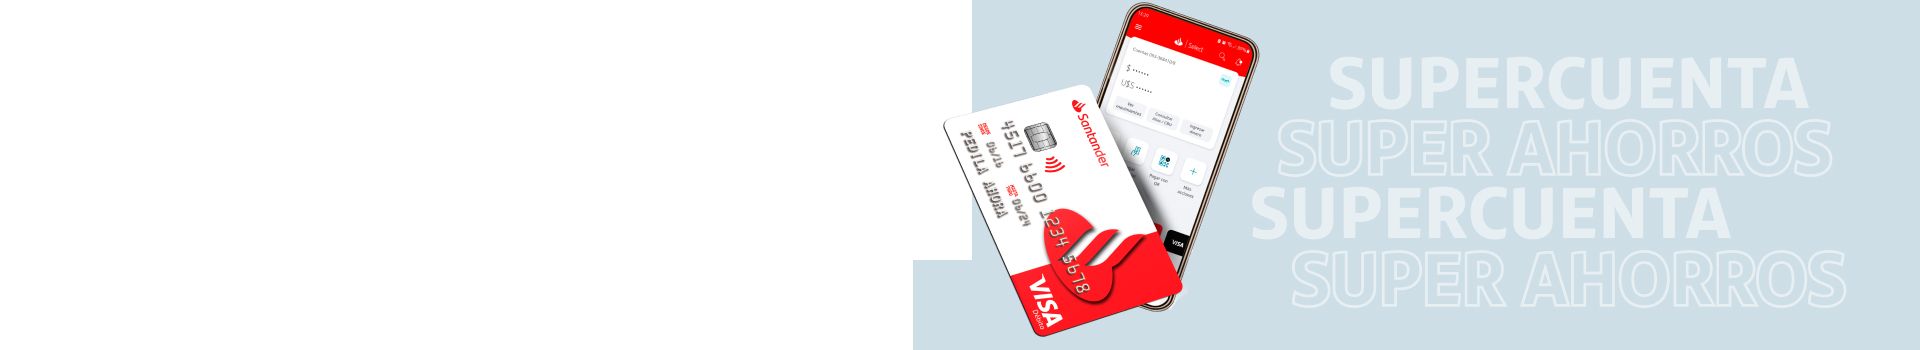 Tarjeta de débito SuperCuenta y app Santander